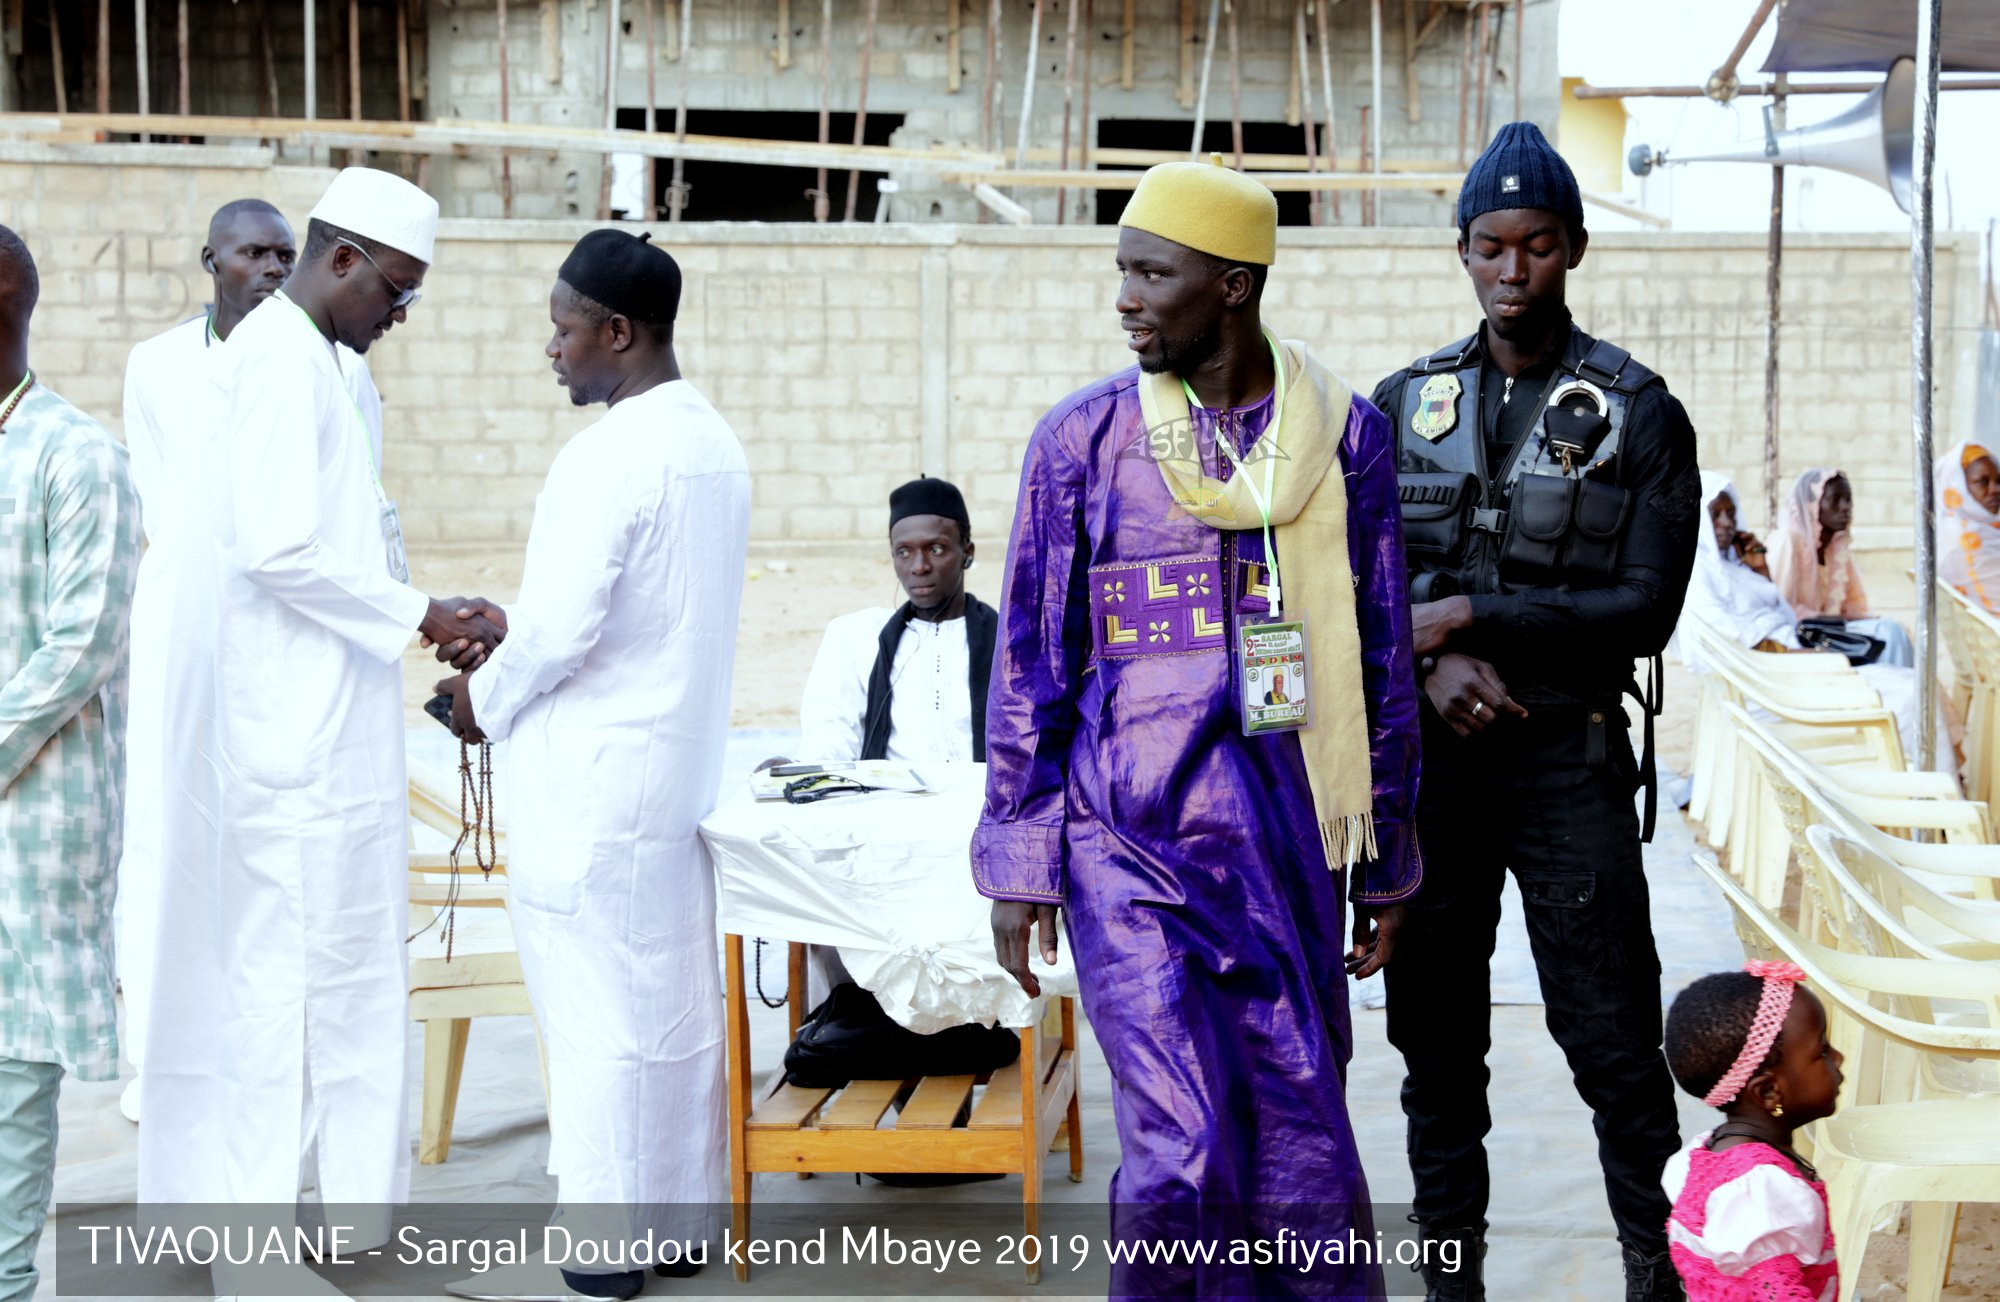 PHOTOS - TIVAOUANE - Les Images du Sargal Doudou Kend Mbaye, edition 2019, présidé par Serigne Mame Malick SY Mansour